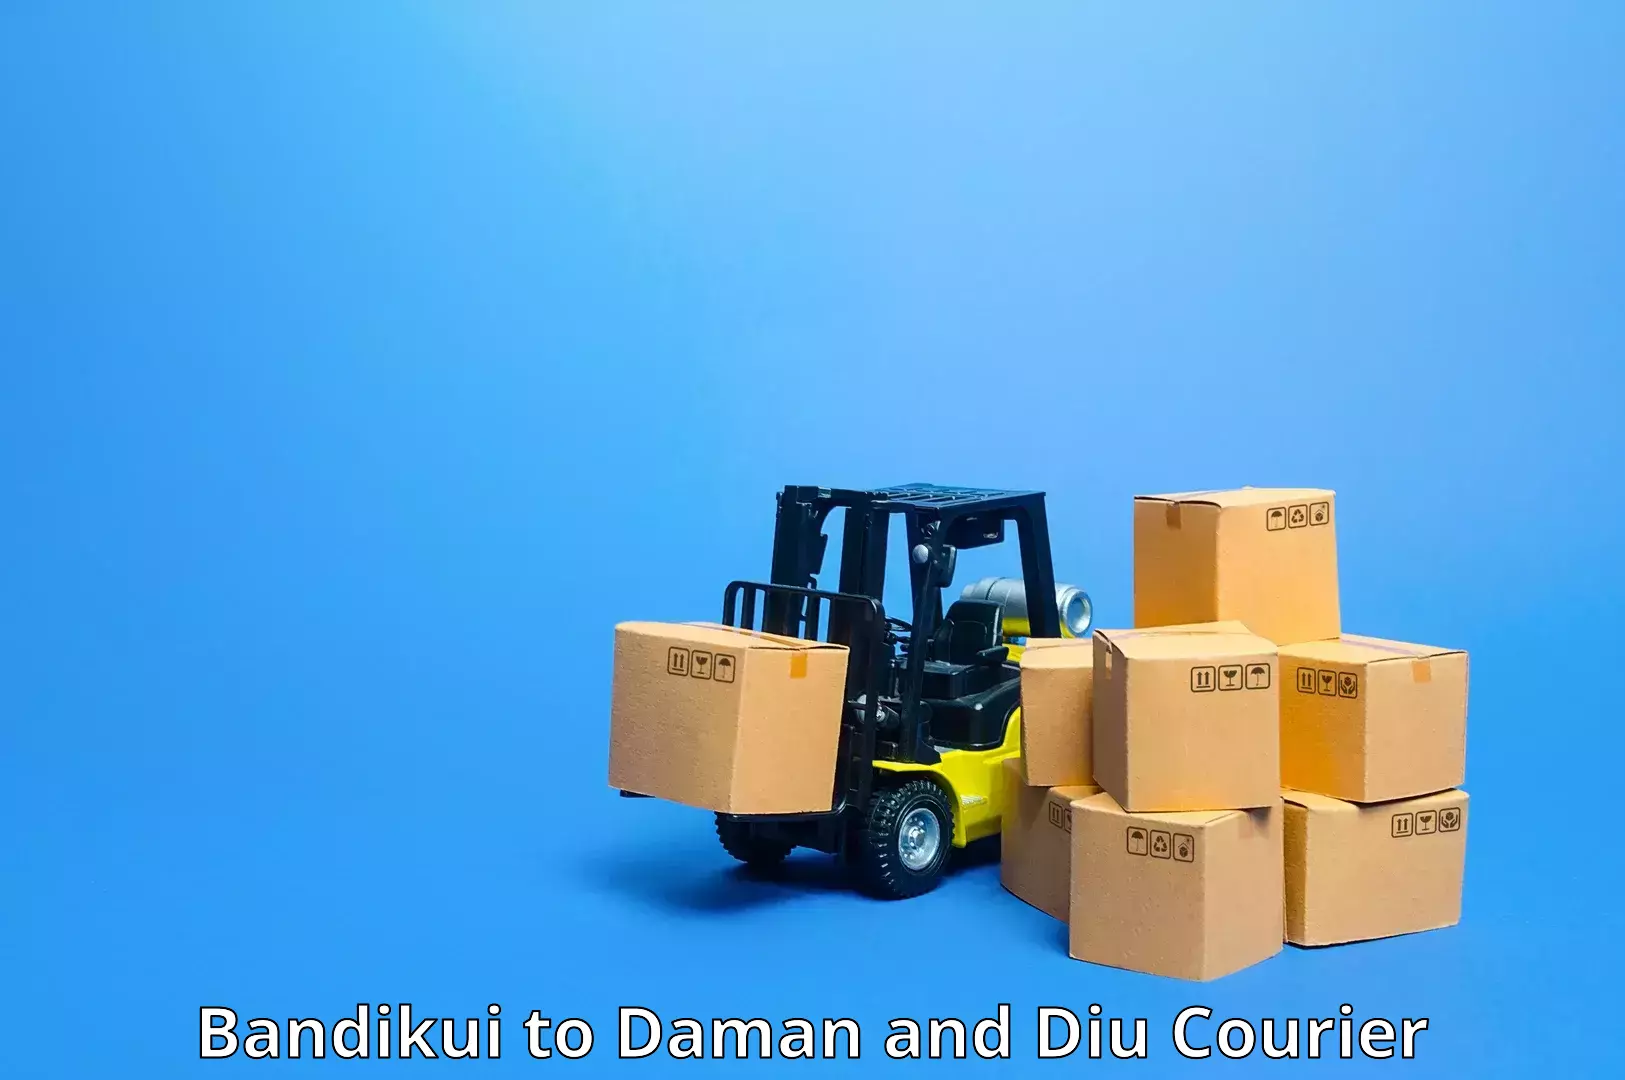 Premium courier services Bandikui to Daman